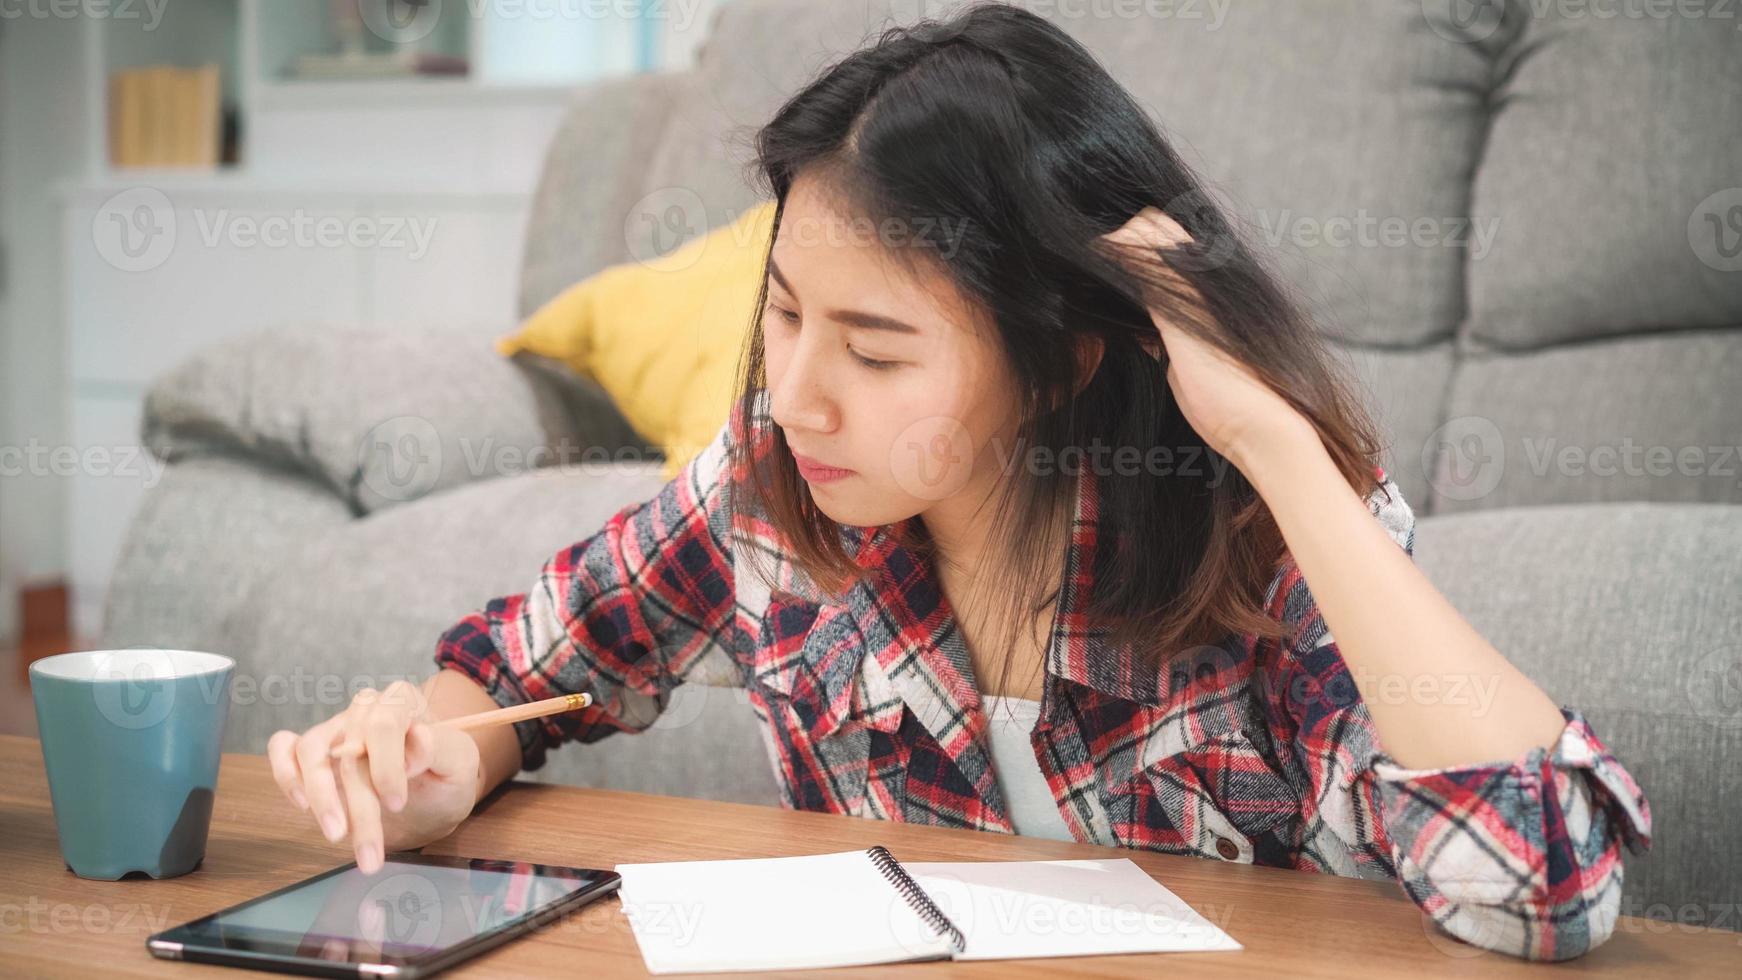 Aziatische studentenvrouw doet thuis huiswerk, vrouw drinkt koffie en gebruikt een tablet om thuis op de bank in de woonkamer te zoeken. levensstijl vrouwen ontspannen thuis concept. foto